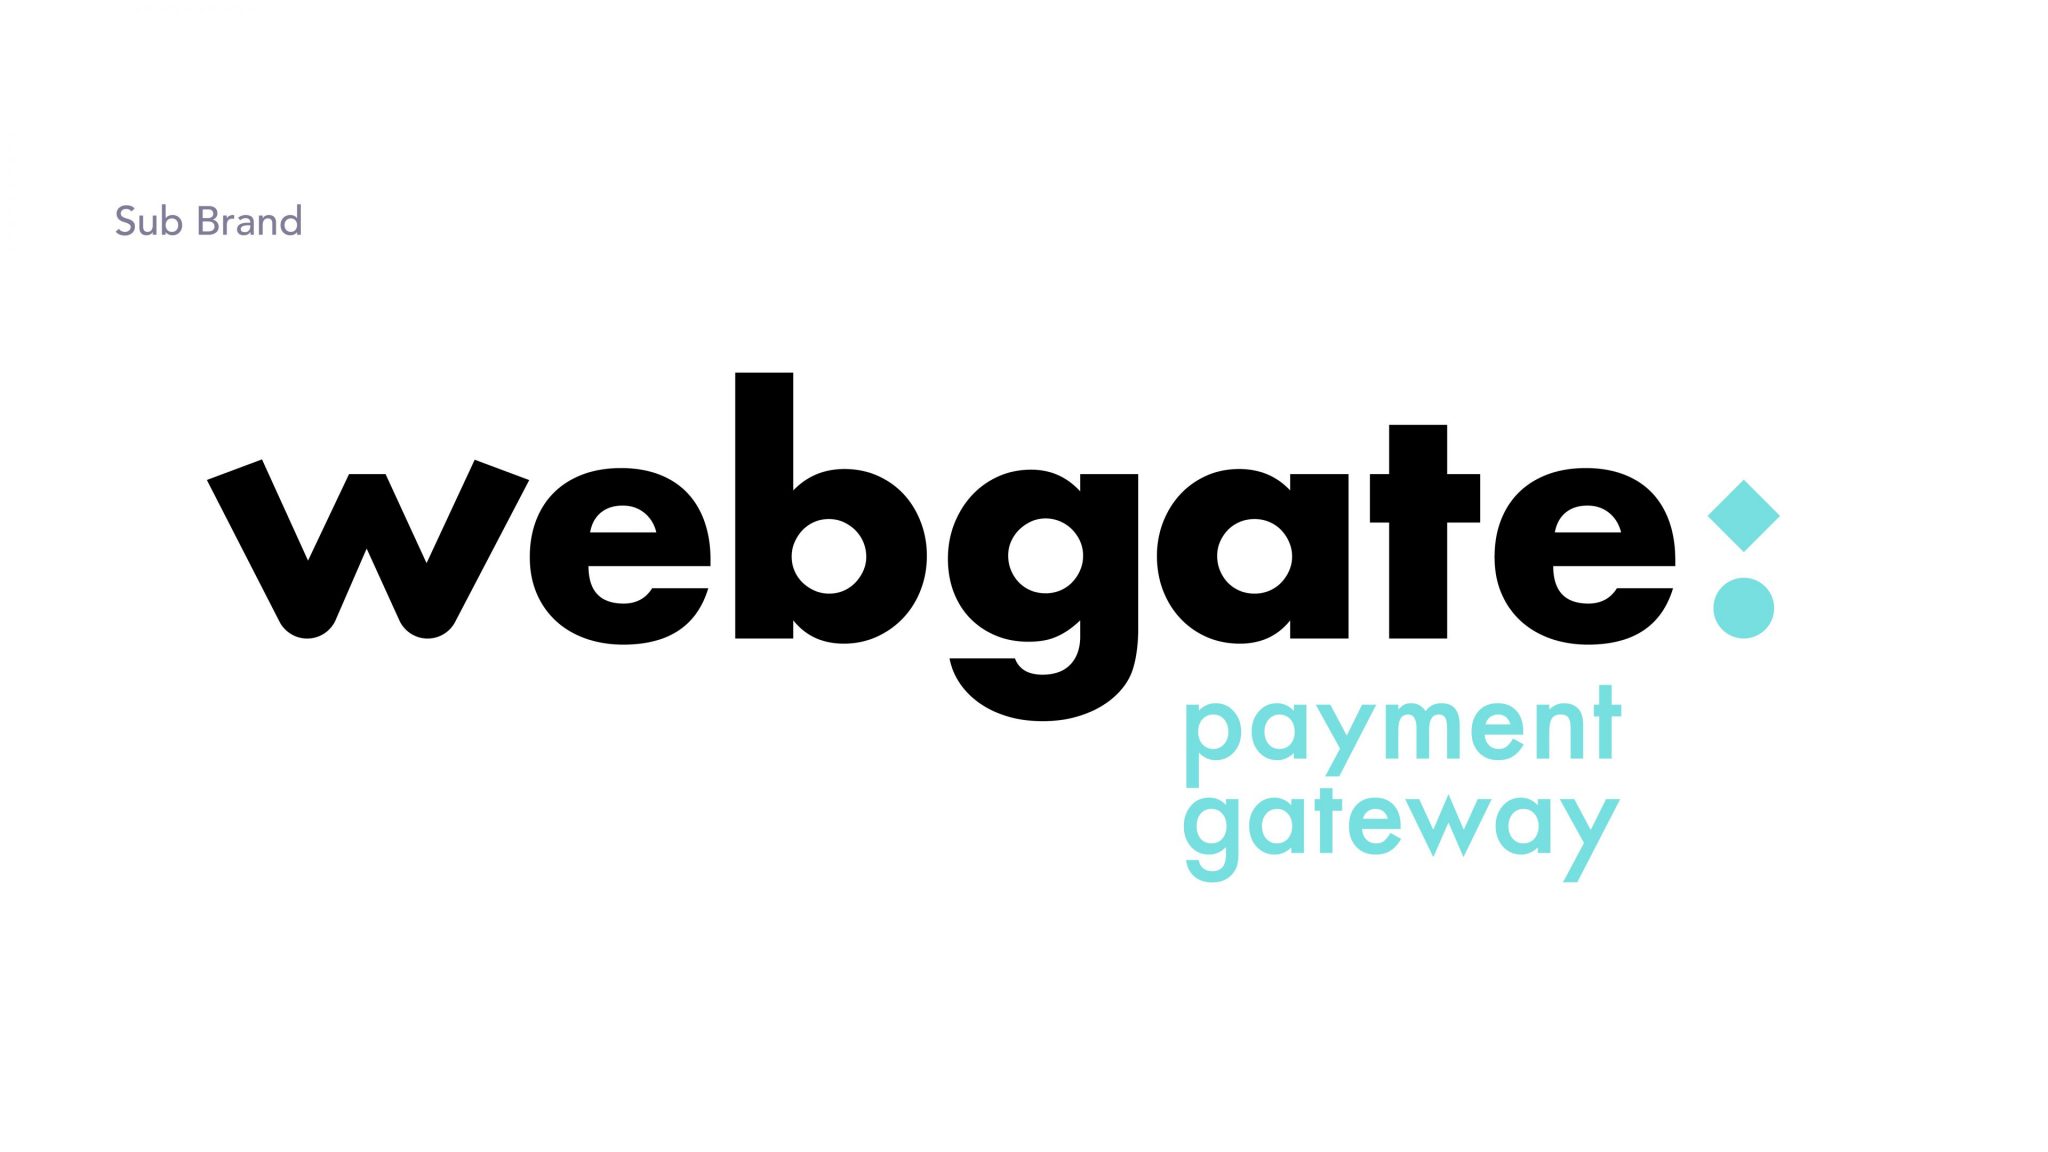 Webgate payment gateway brand logo